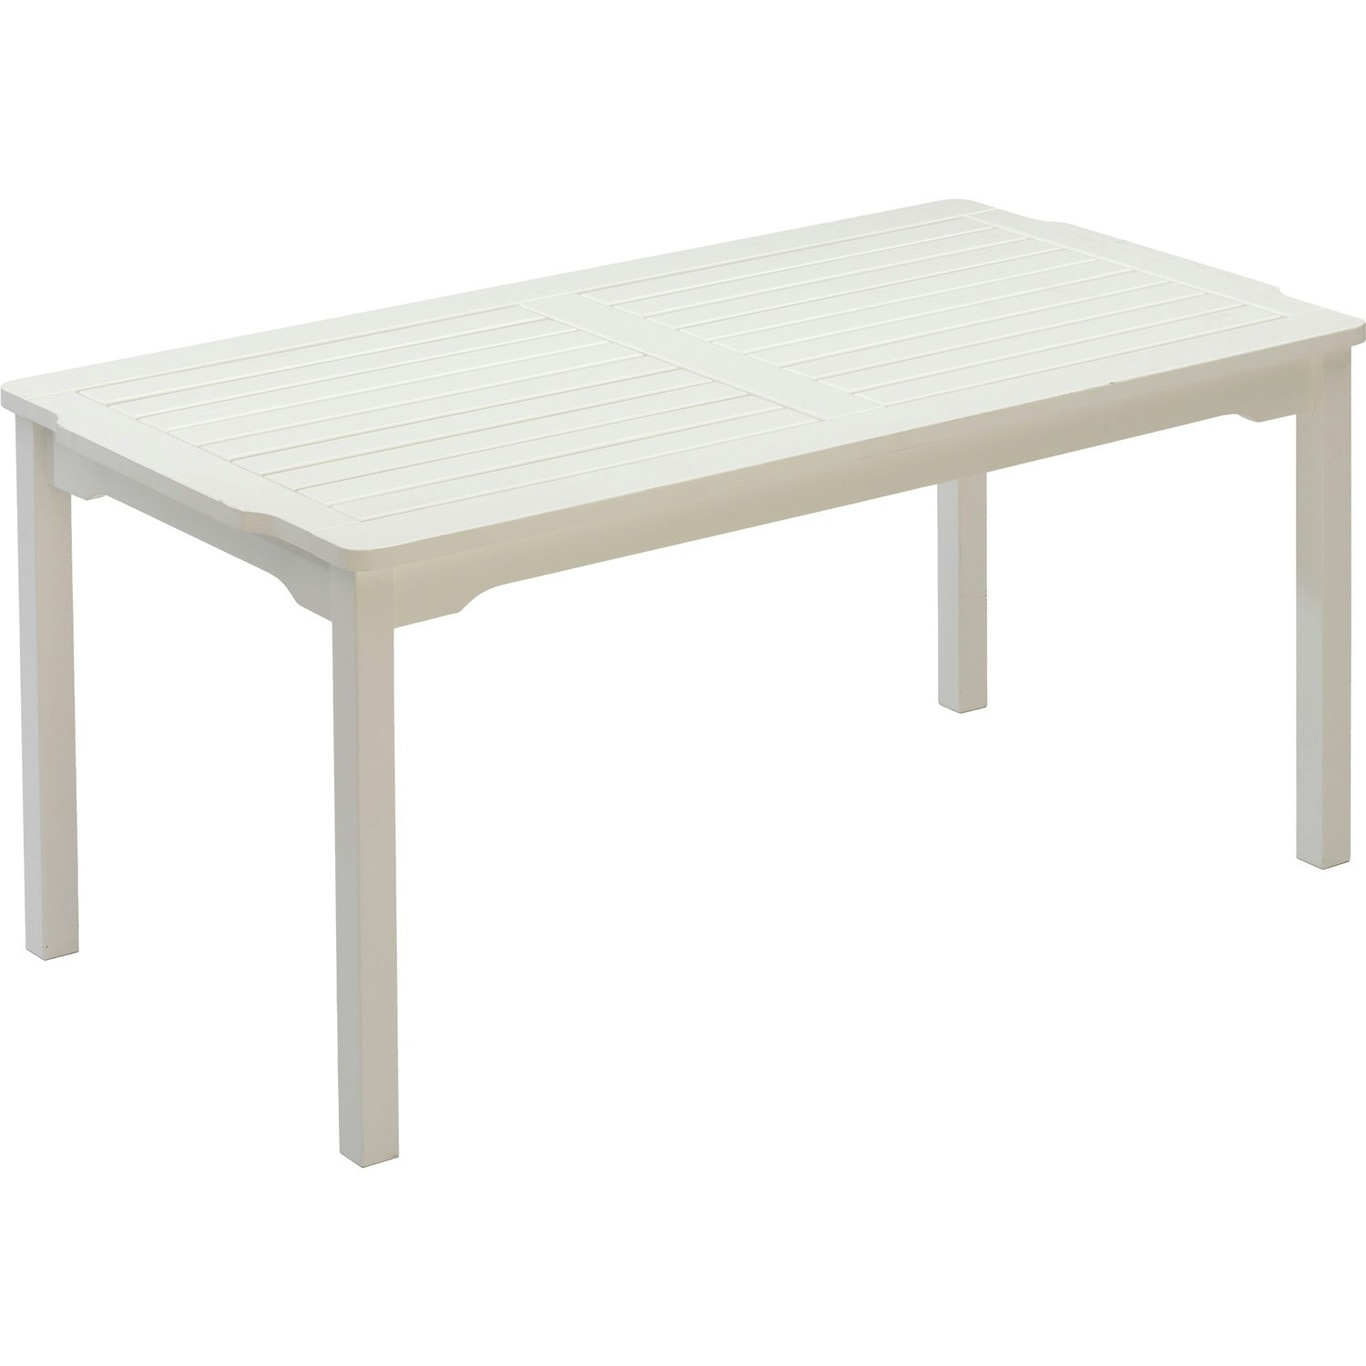 Visby Pöytä 85x150x72 cm, Valkoinen